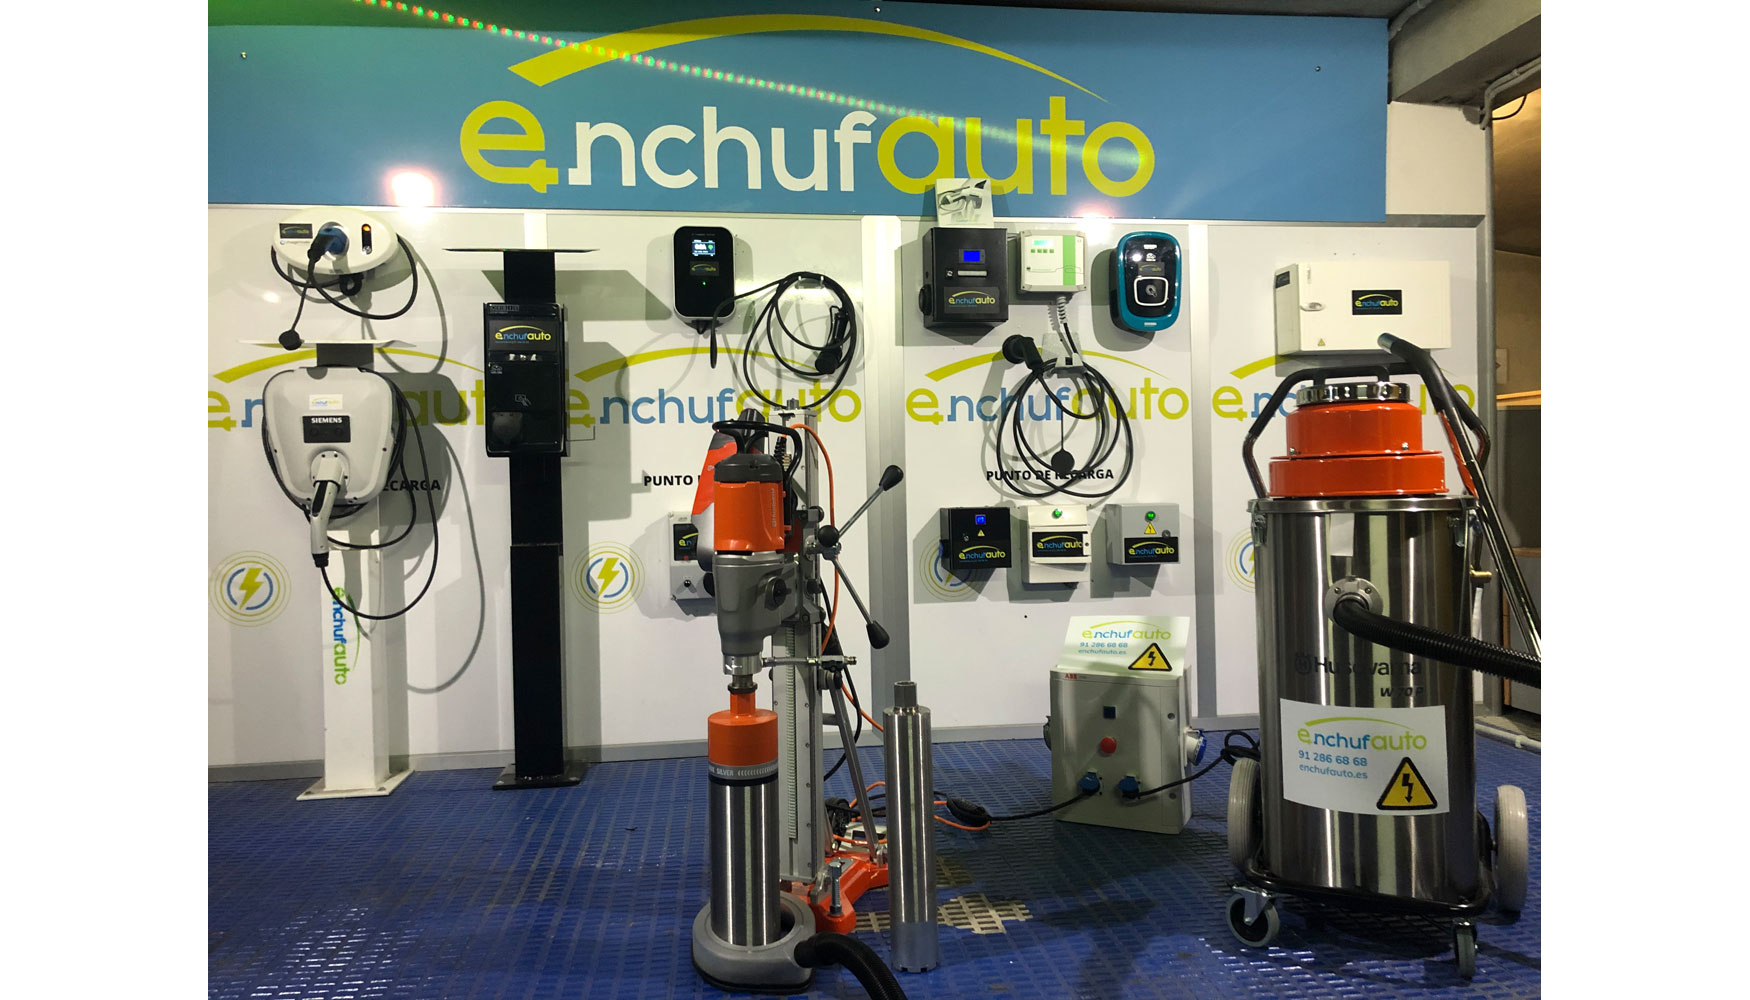 Enchufauto es una empresa pionera en Espaa en materia de instalaciones de puntos de recarga para vehculos elctricos...